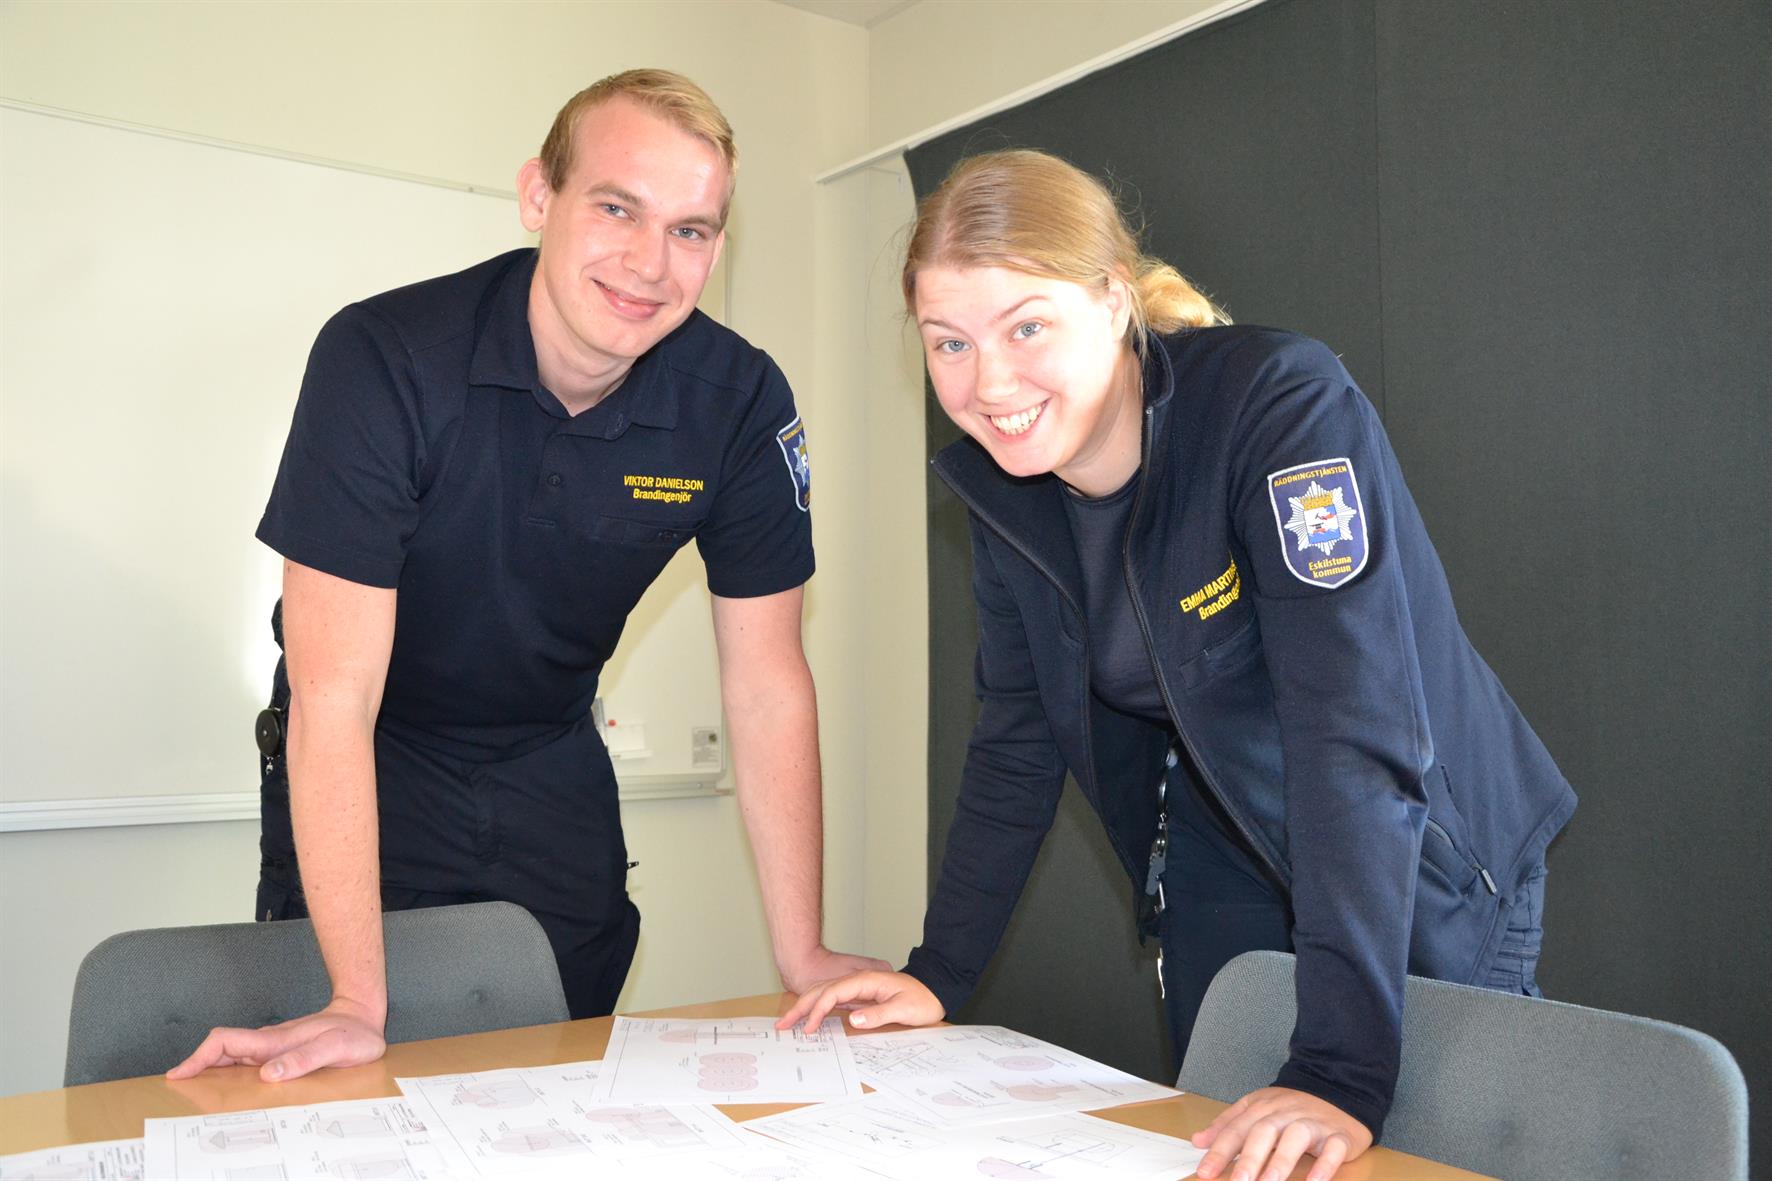 En man och en kvinna, båda klädda i räddningstjänstens uniform, står lutade över ett bord.